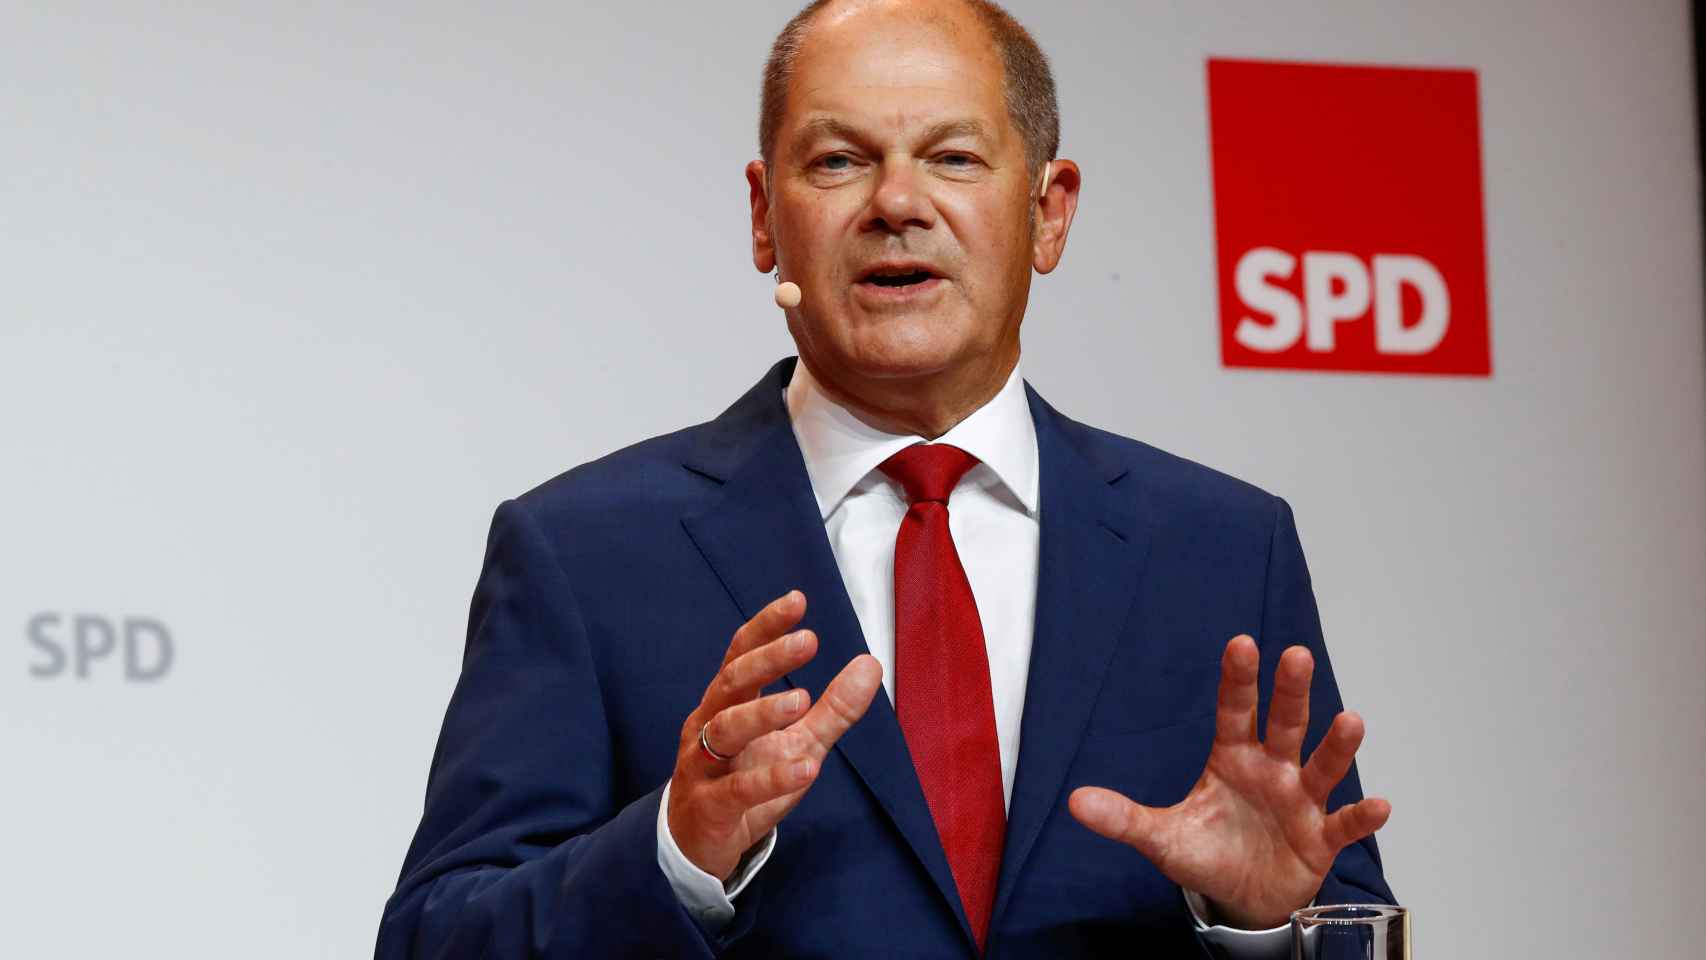 Olaf Scholz será el candidato del SPD a la cancillería en 2021.